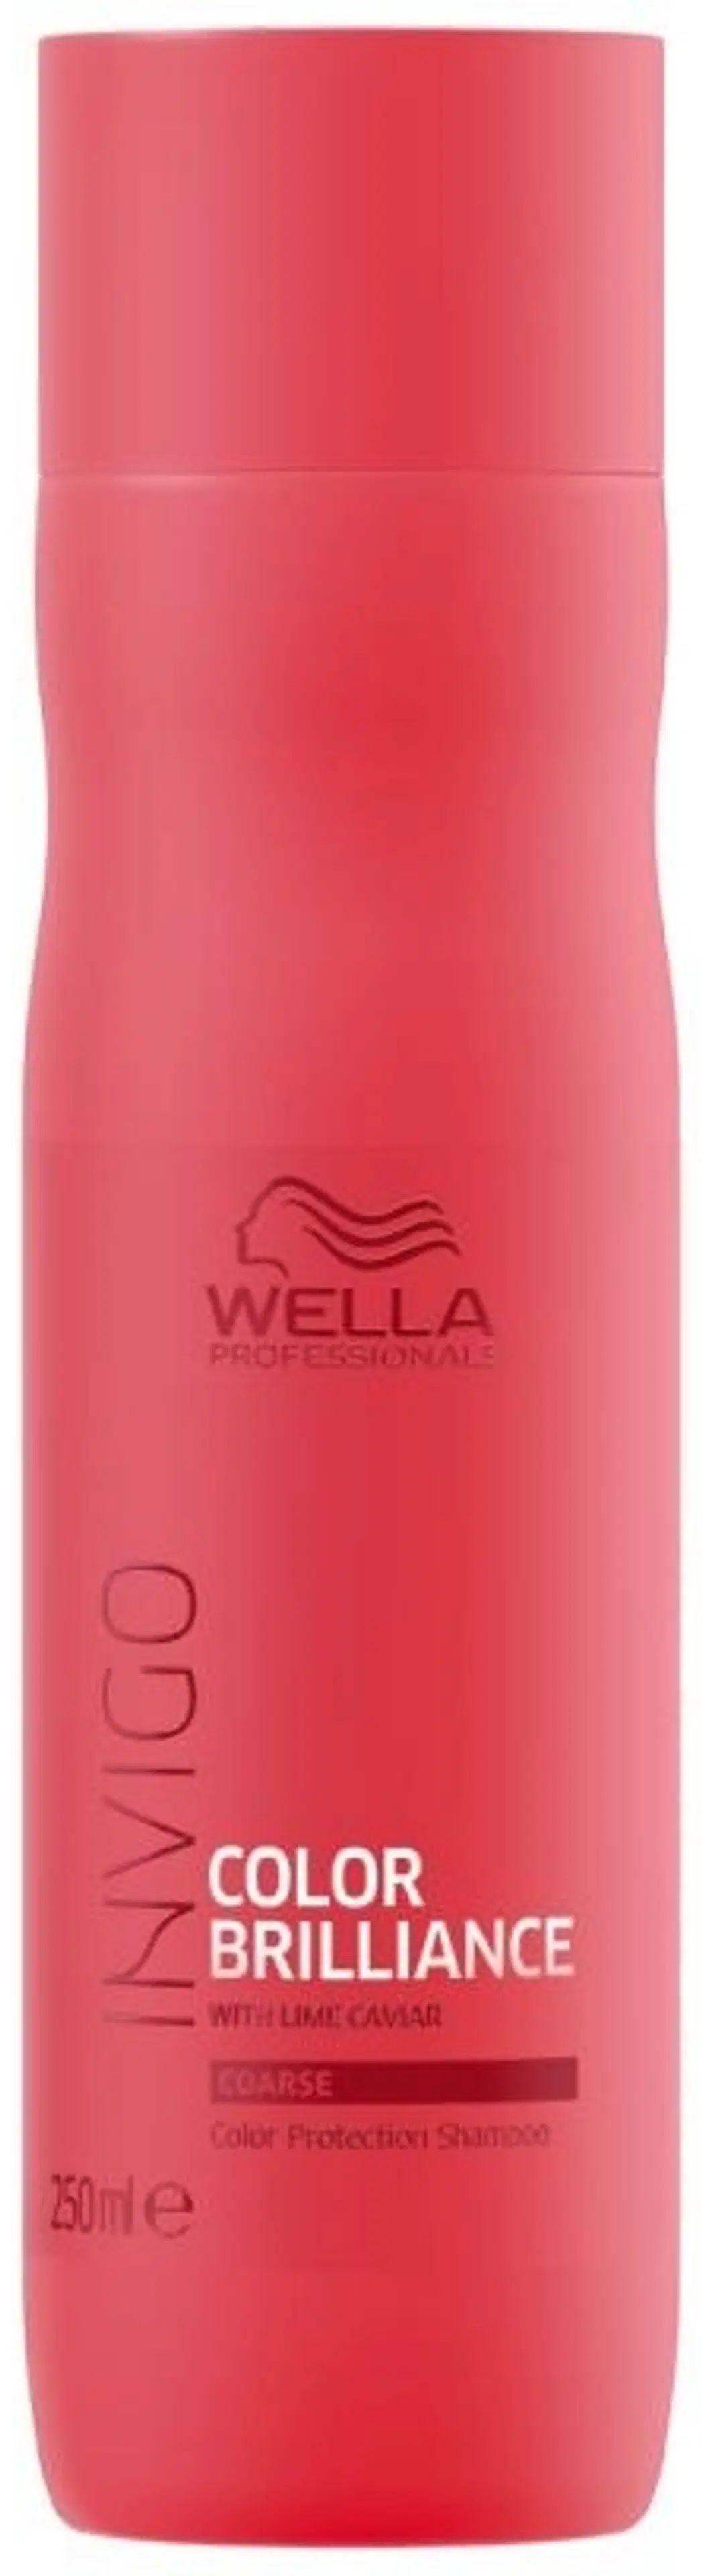 Wella Professionals Invigo Color Brilliance Coarse Shampoo 250 ml